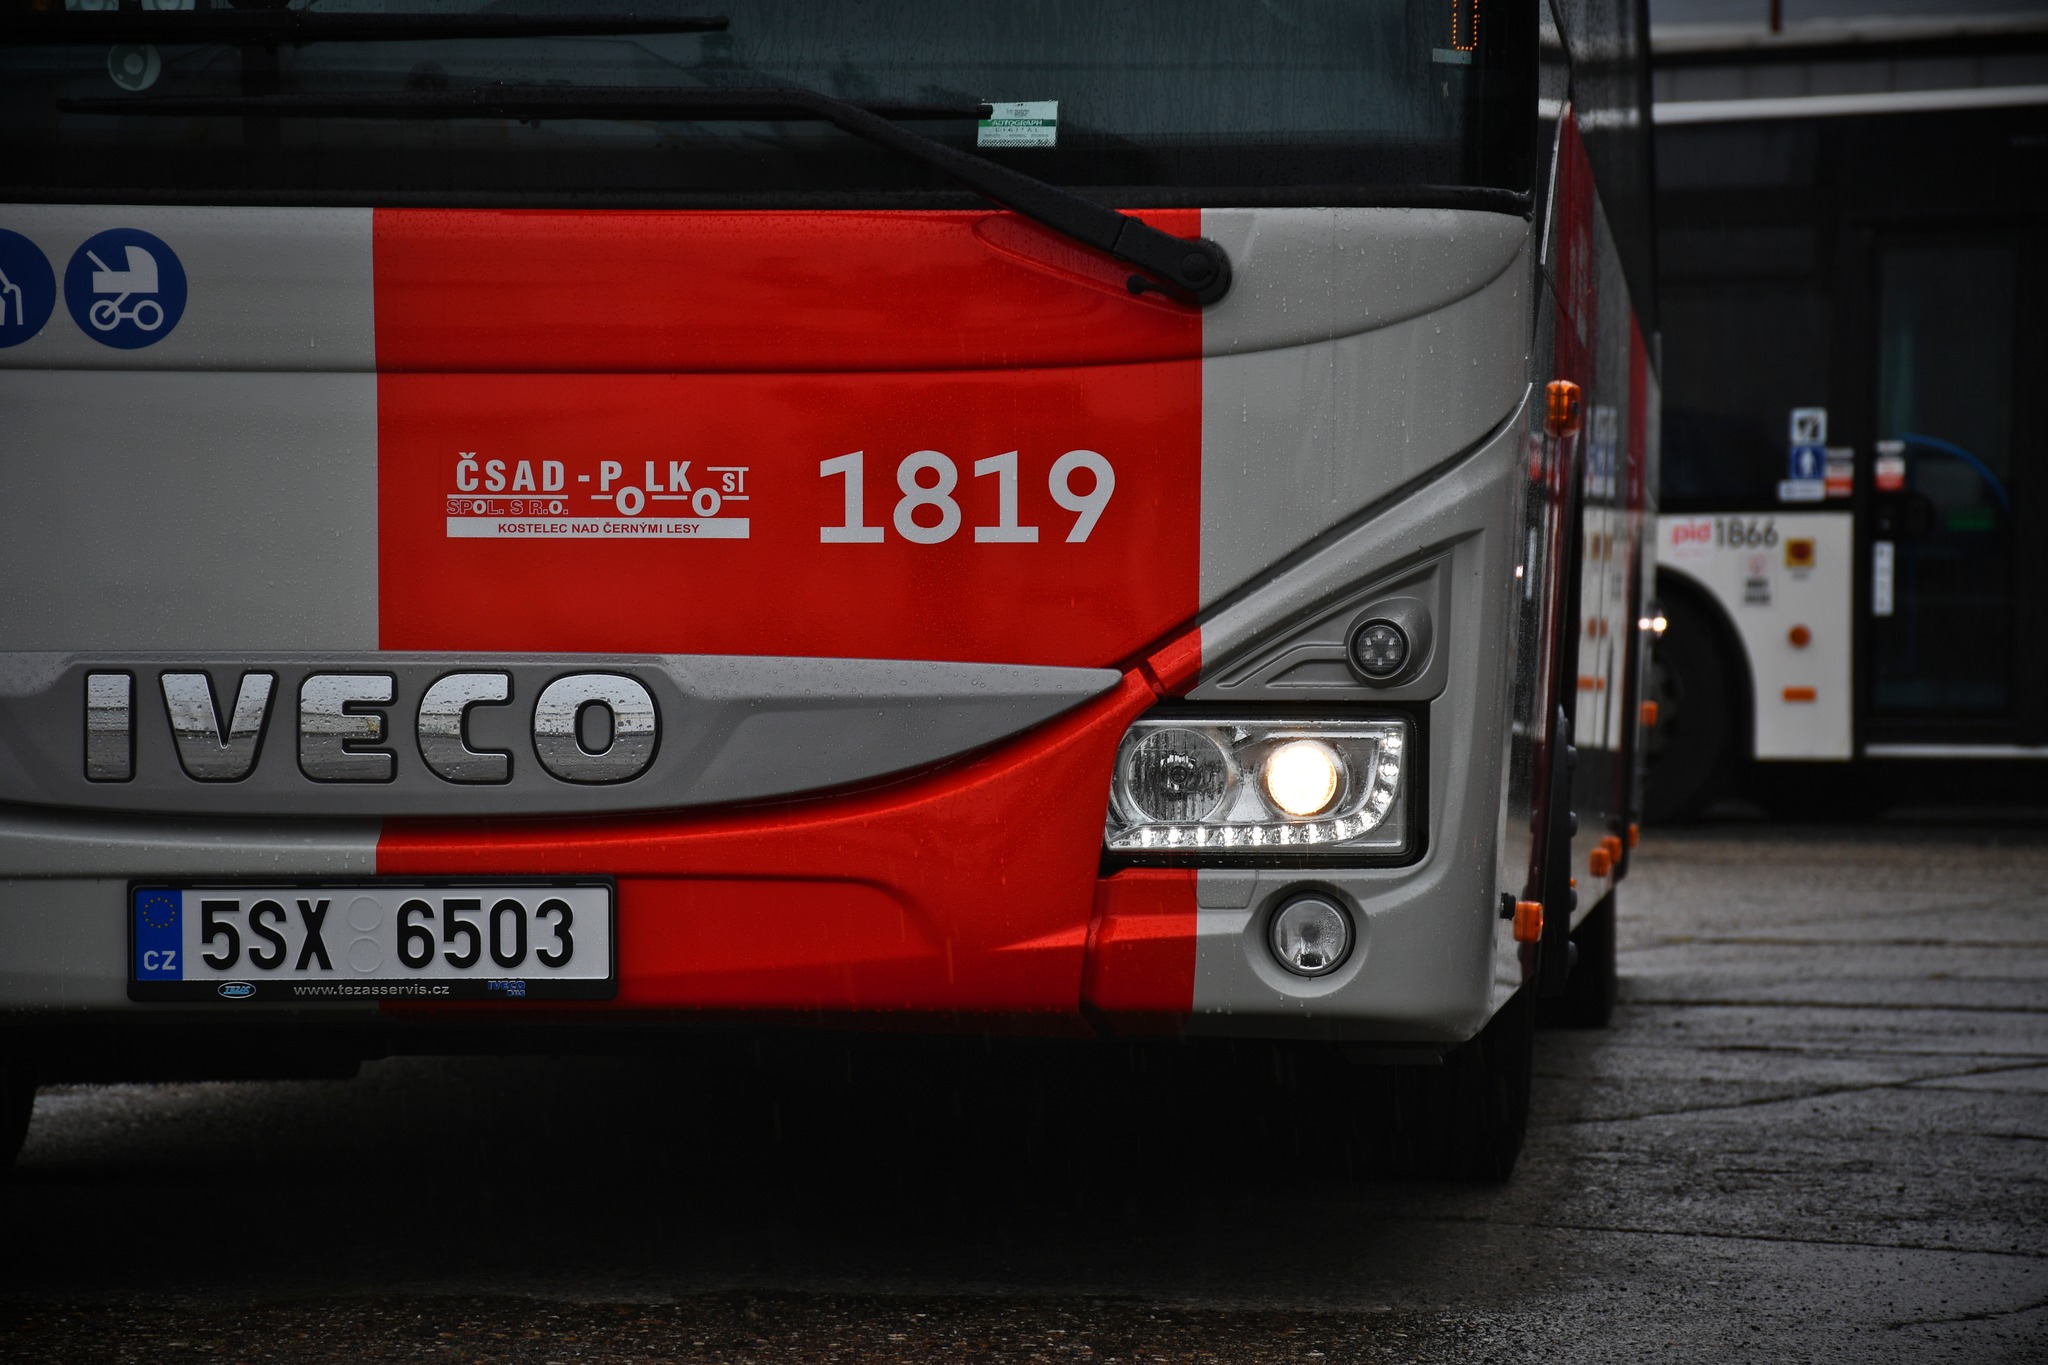 Nový autobus Iveco Crorssway v barvách PID. Foto: Pražská integrovaná doprava